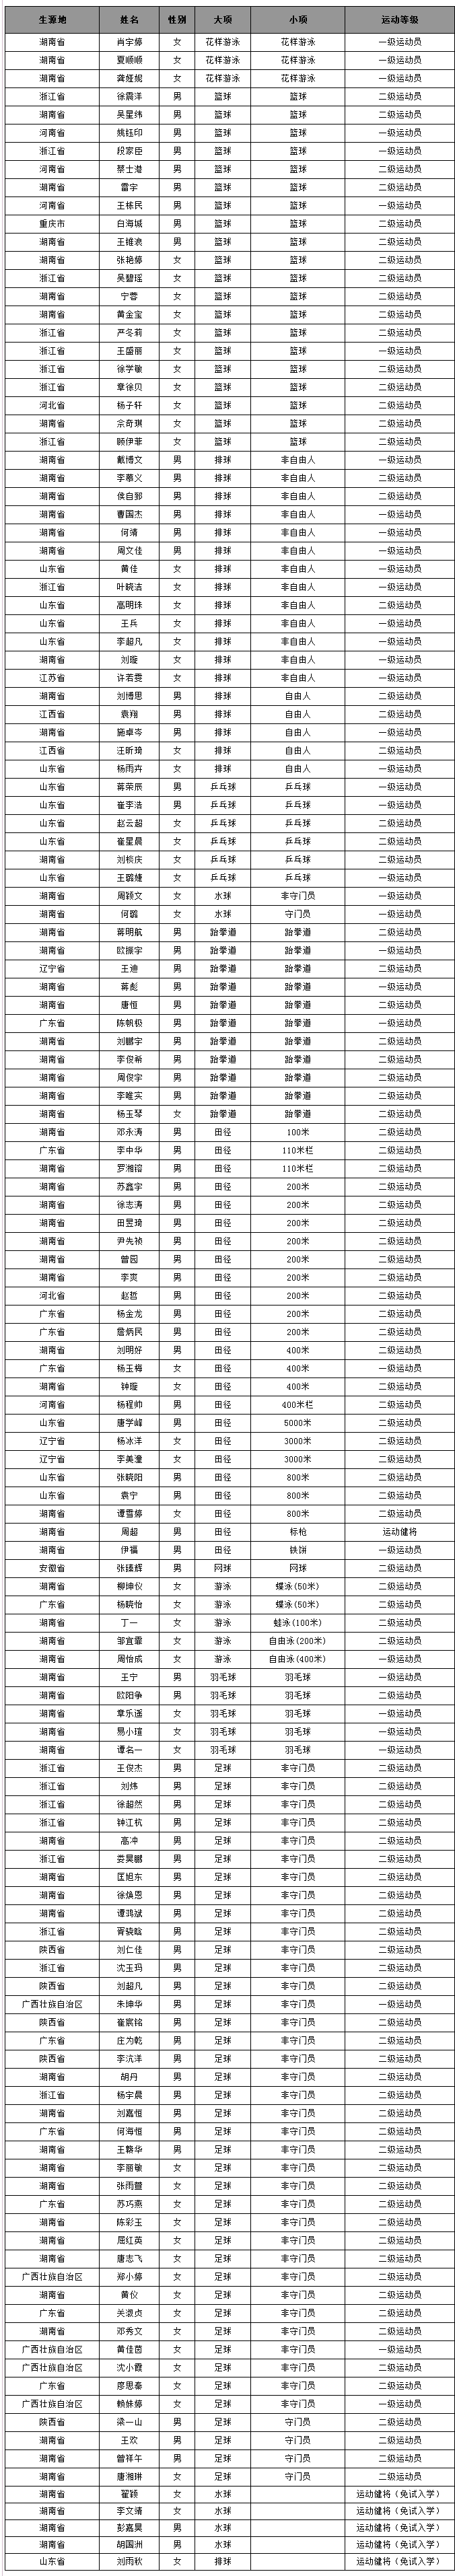 湖南工业大学2017年运动训练专业拟录名单.png